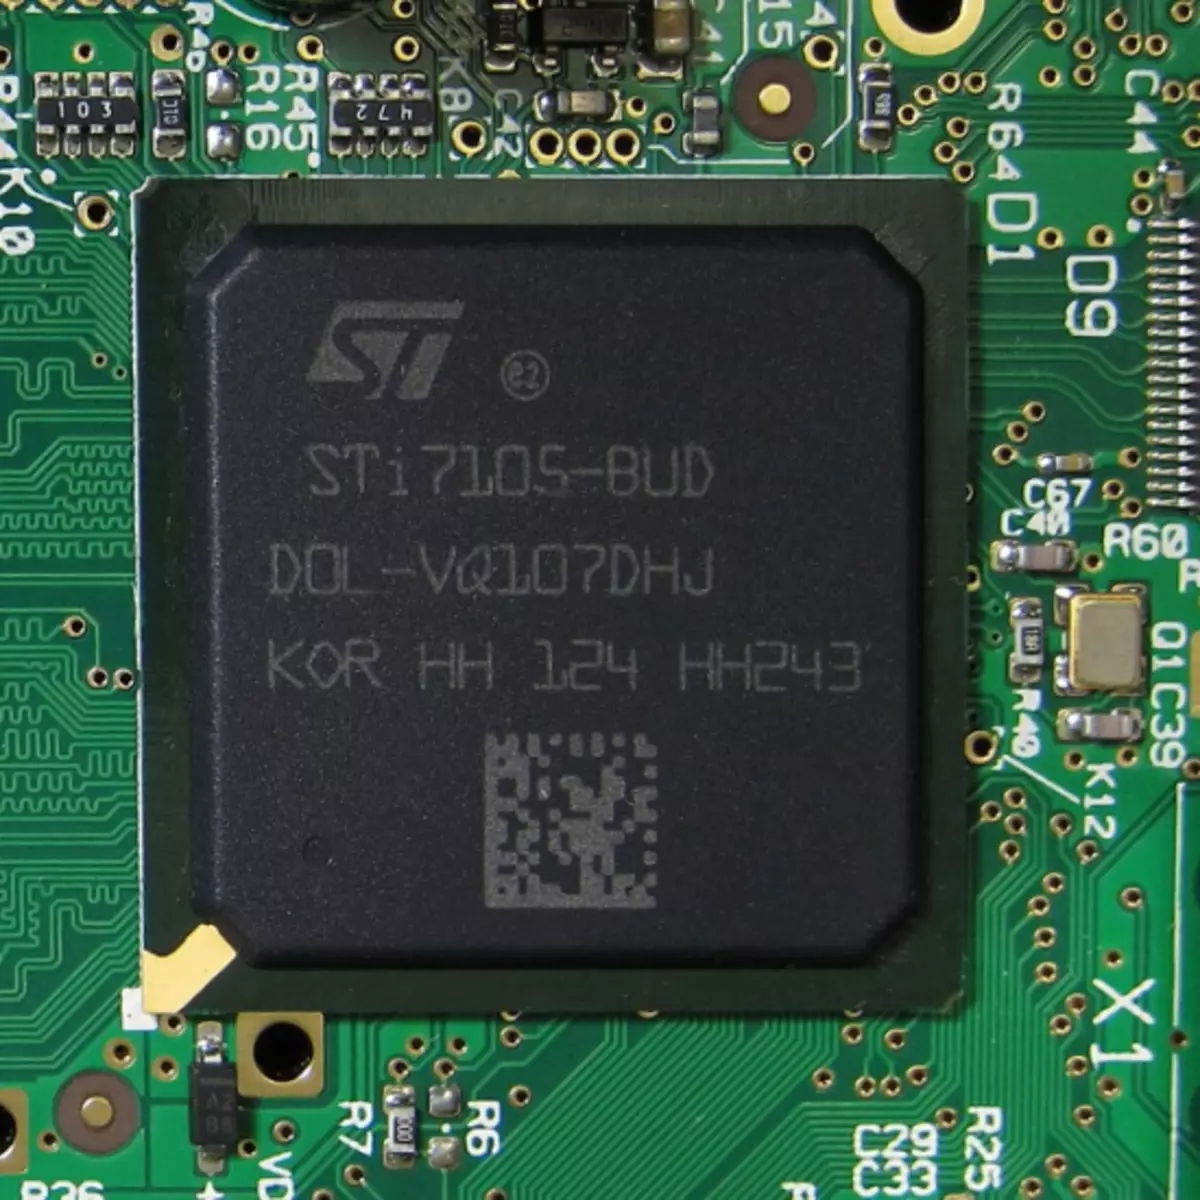 МАГ 250 СТИ7105-БУД процесор